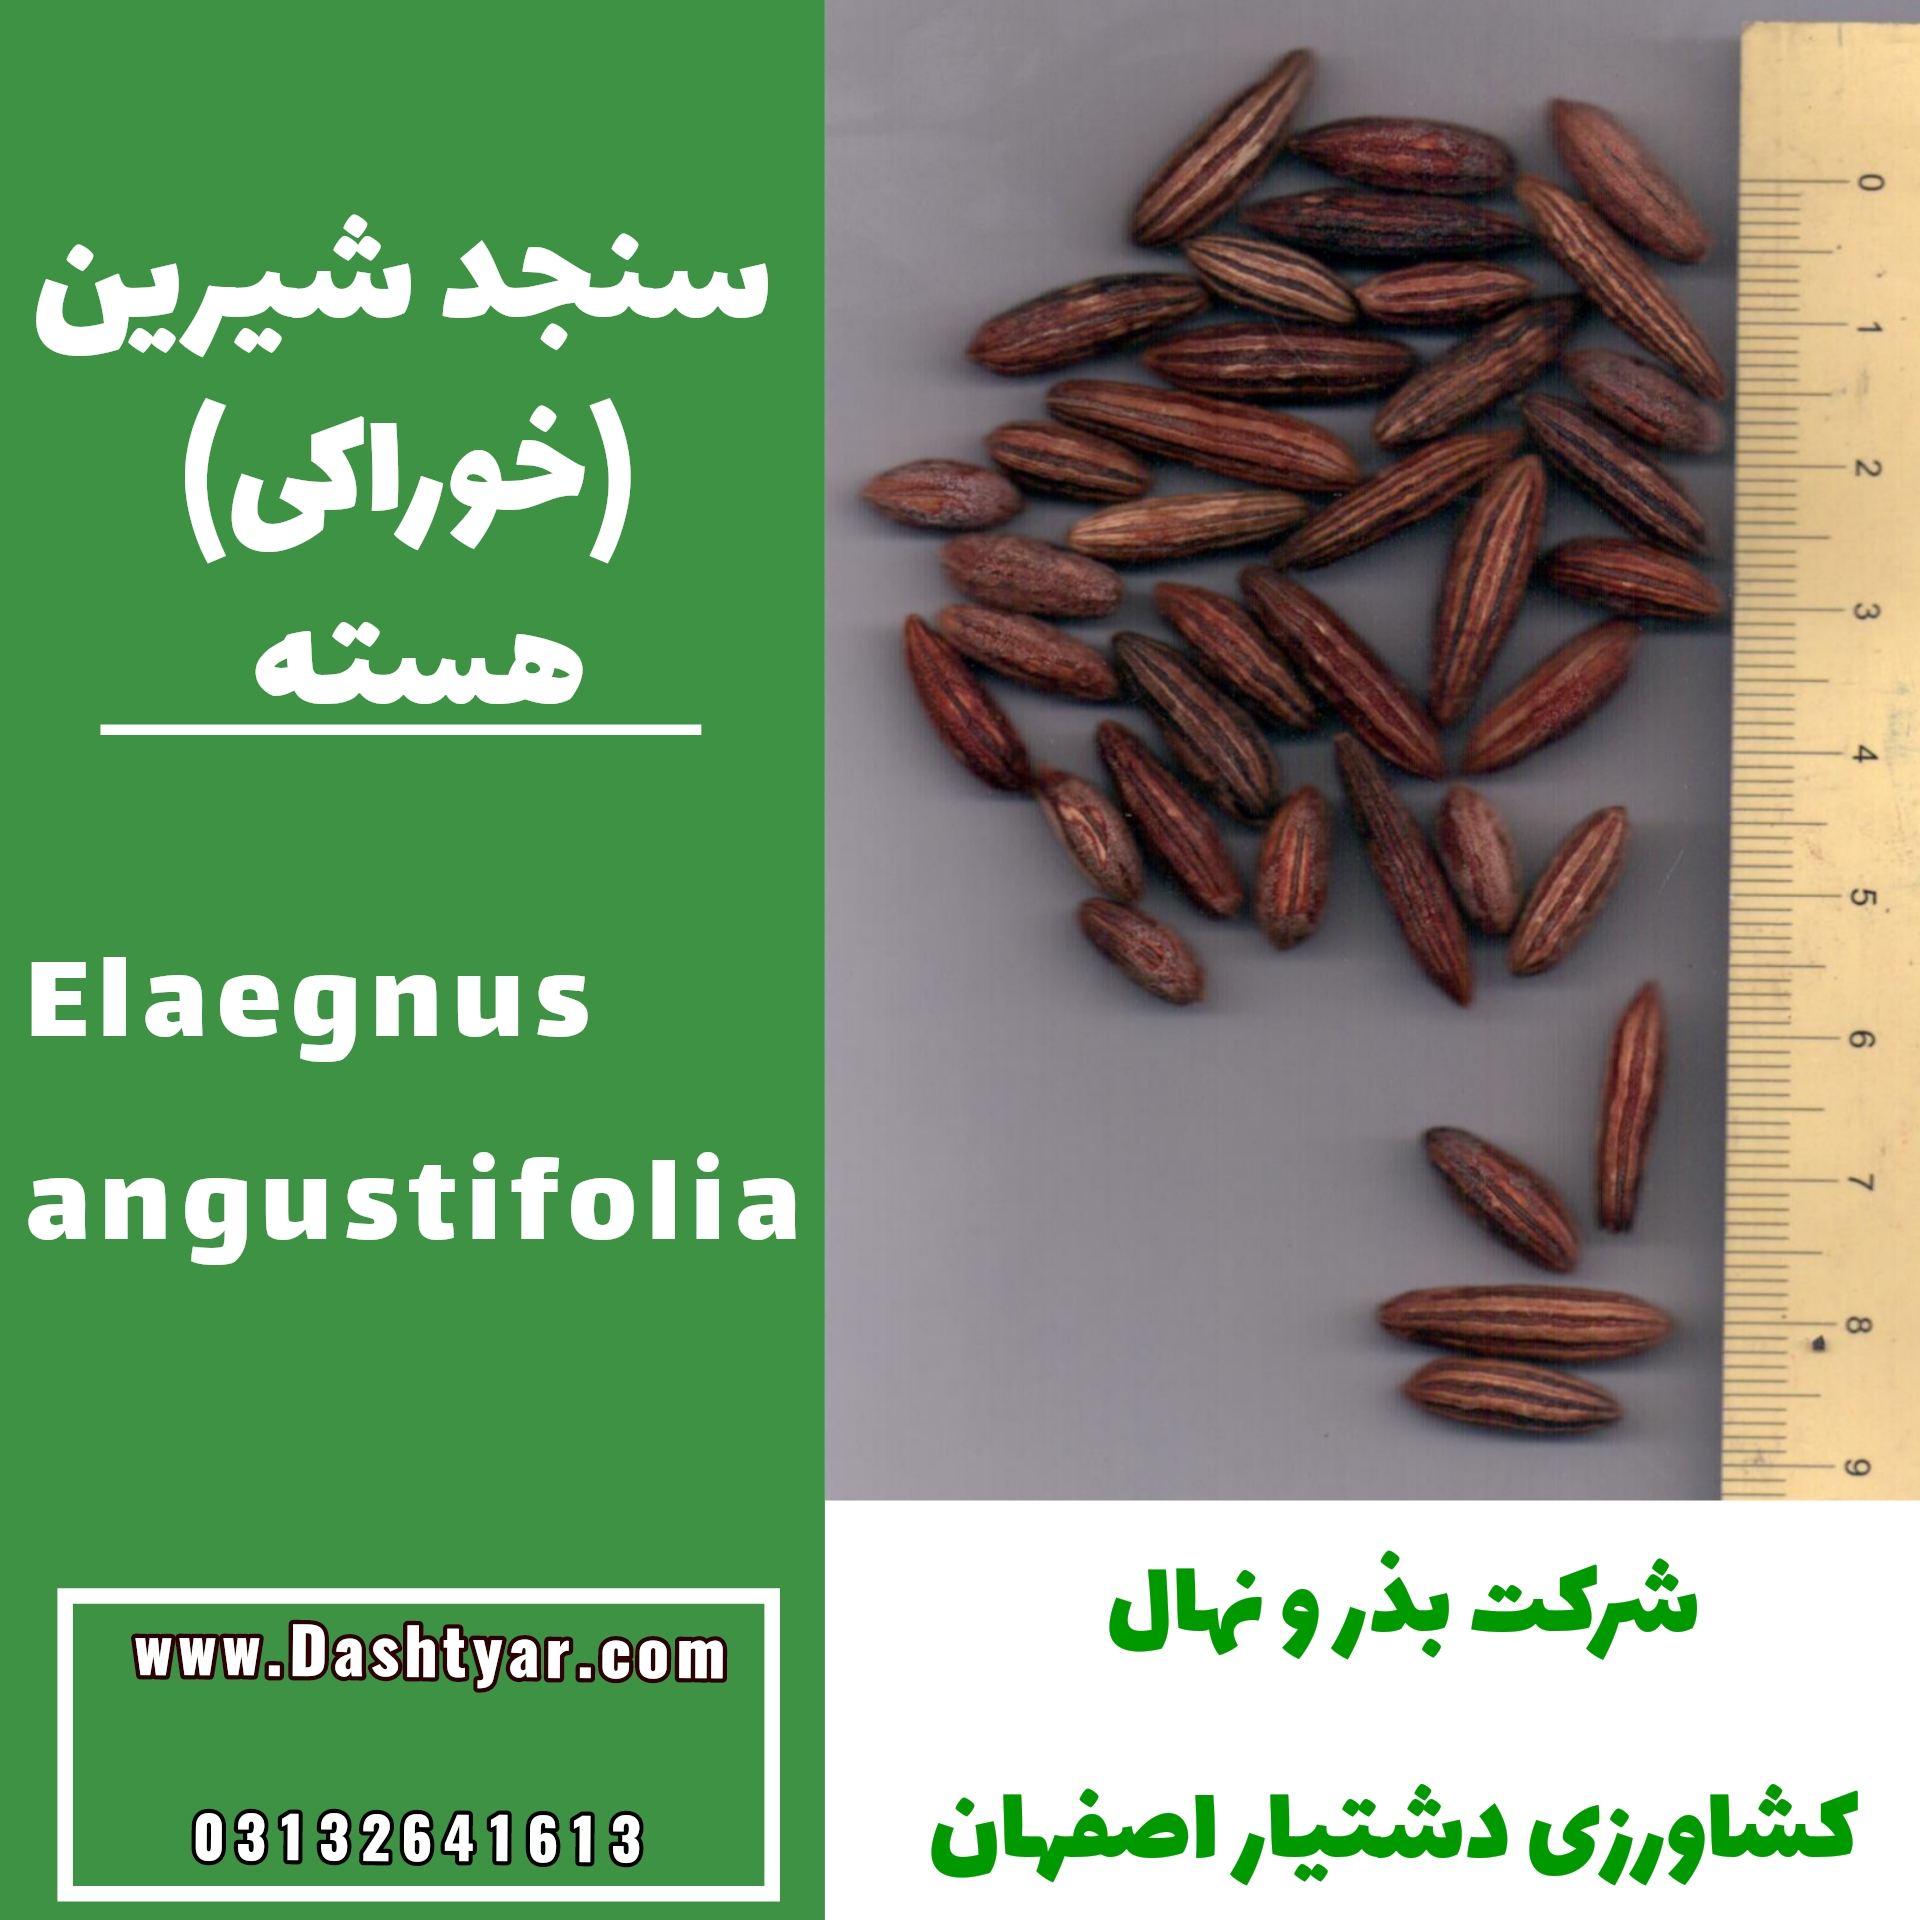 بذر سنجد شیرین (خوراکی)elaegnus angustifolia